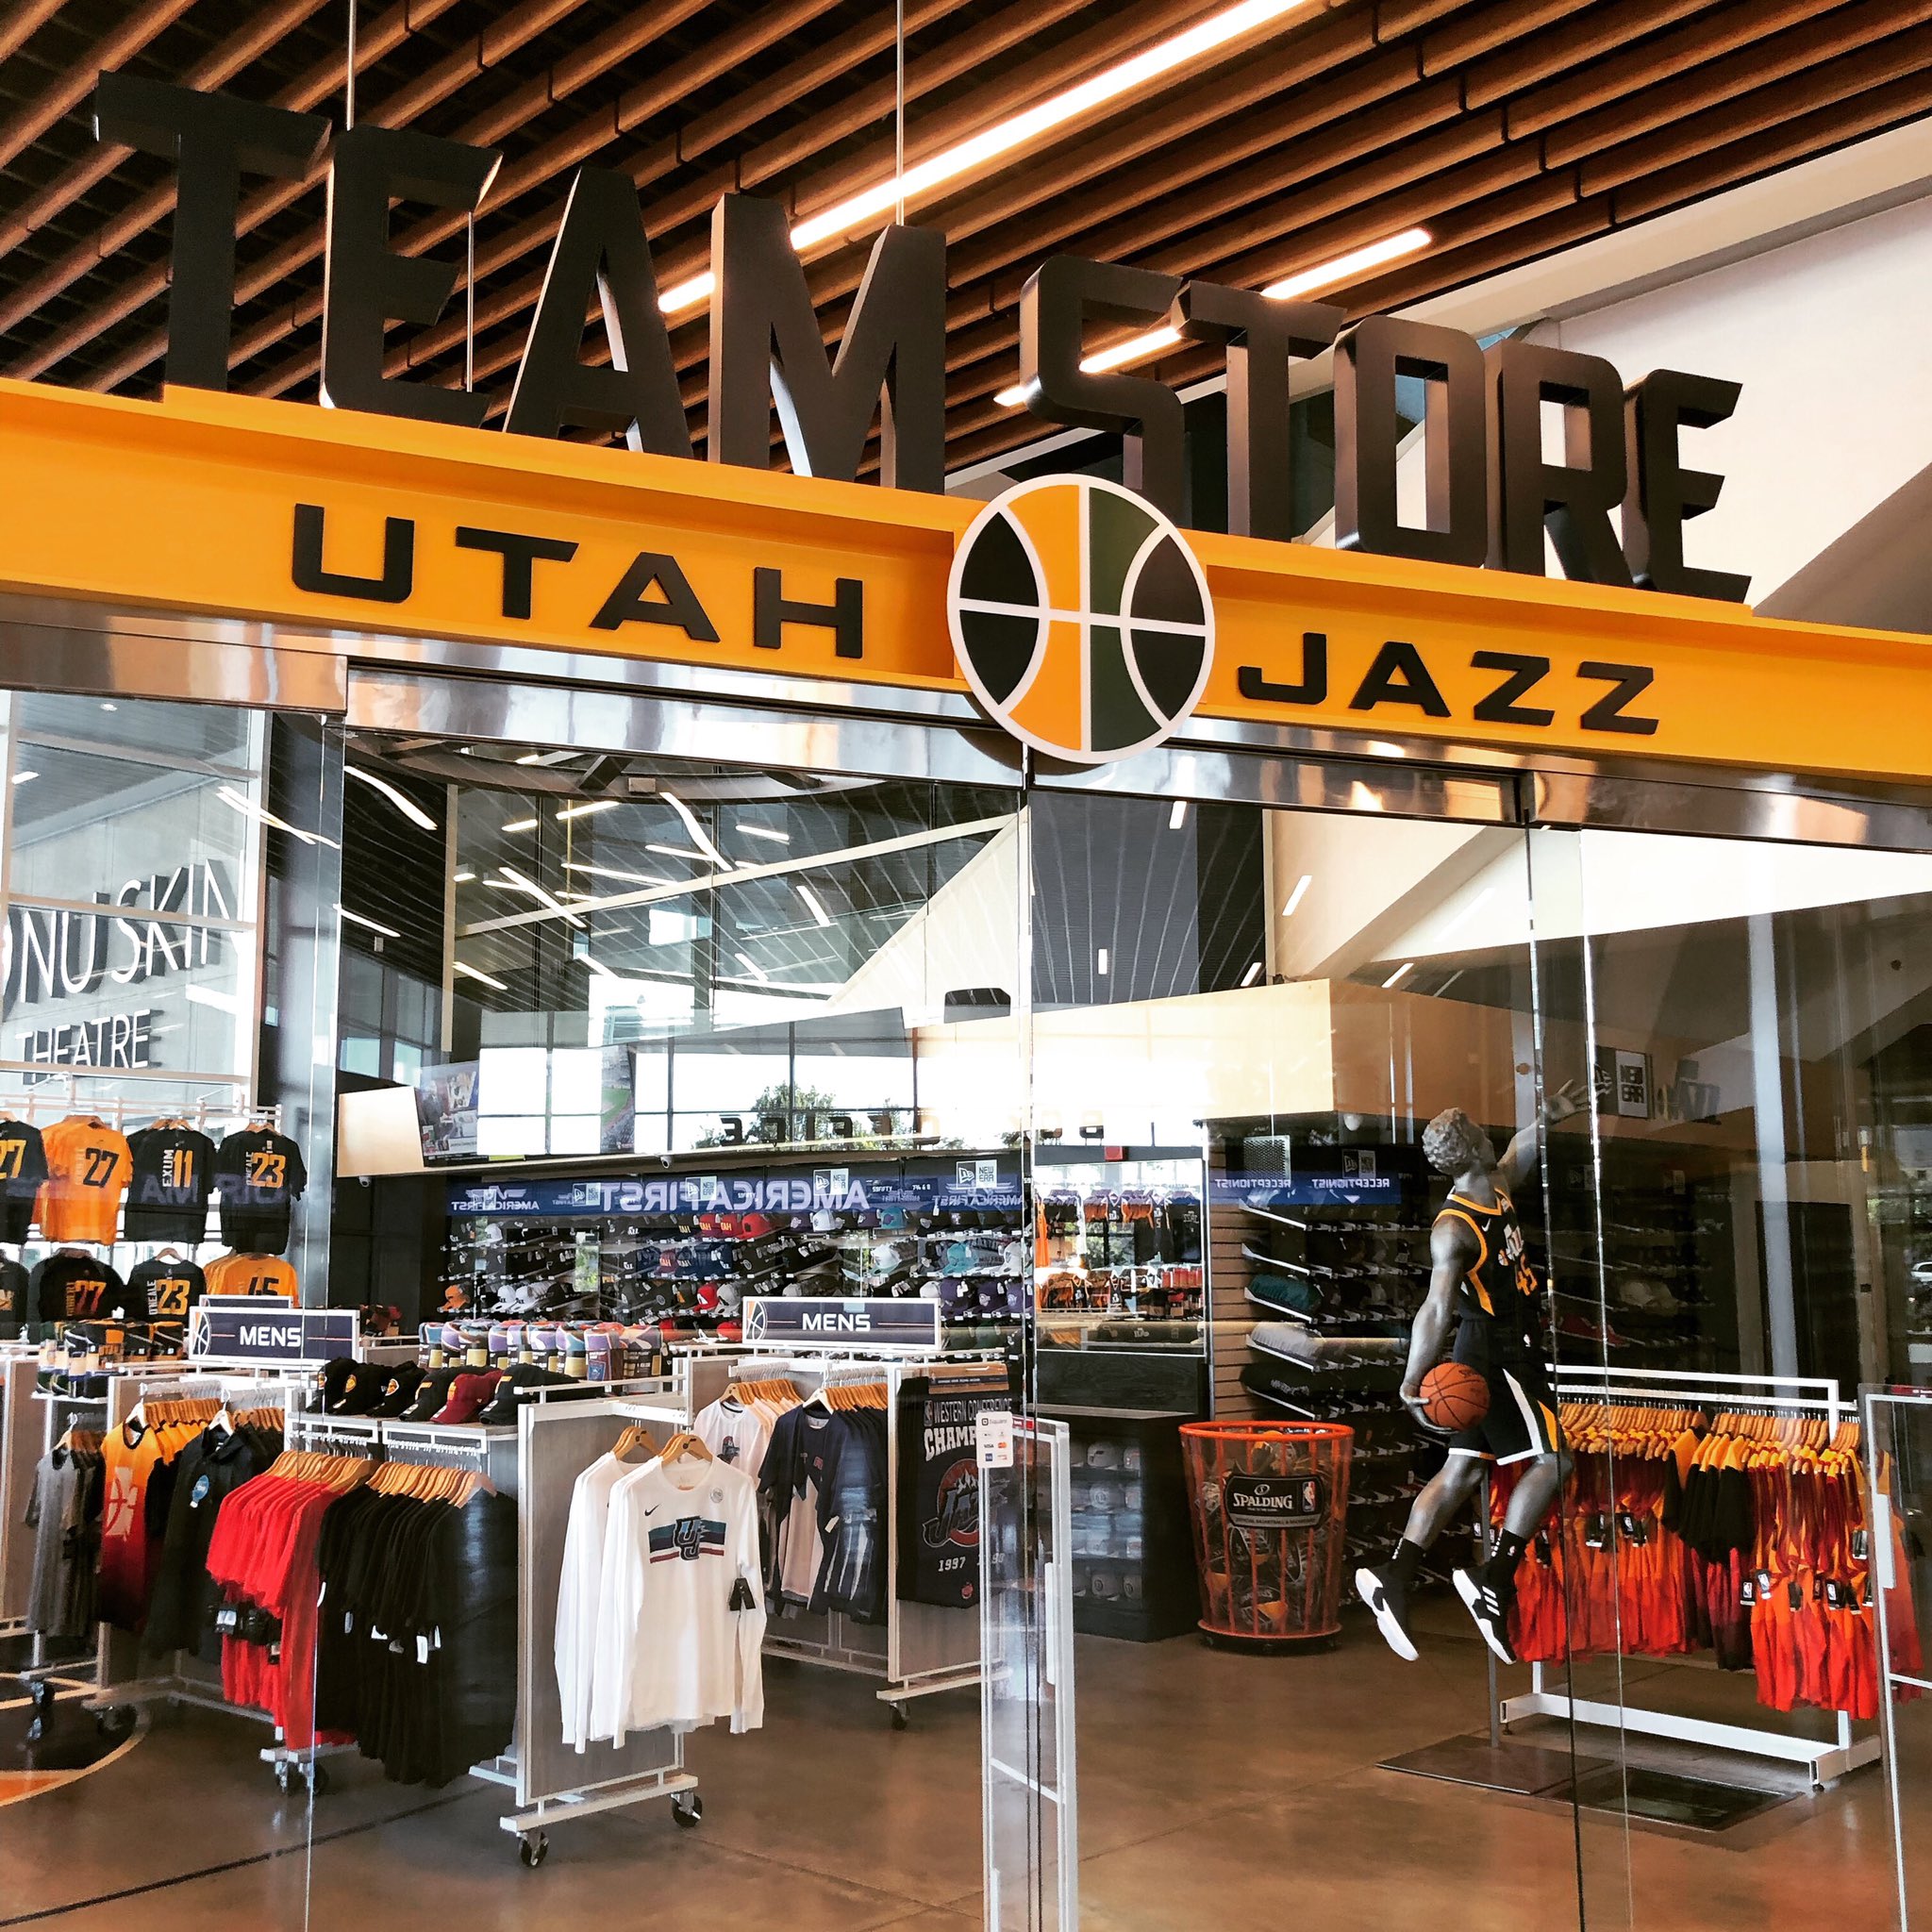 Utah Jazz Team Shop in NBA Fan Shop 